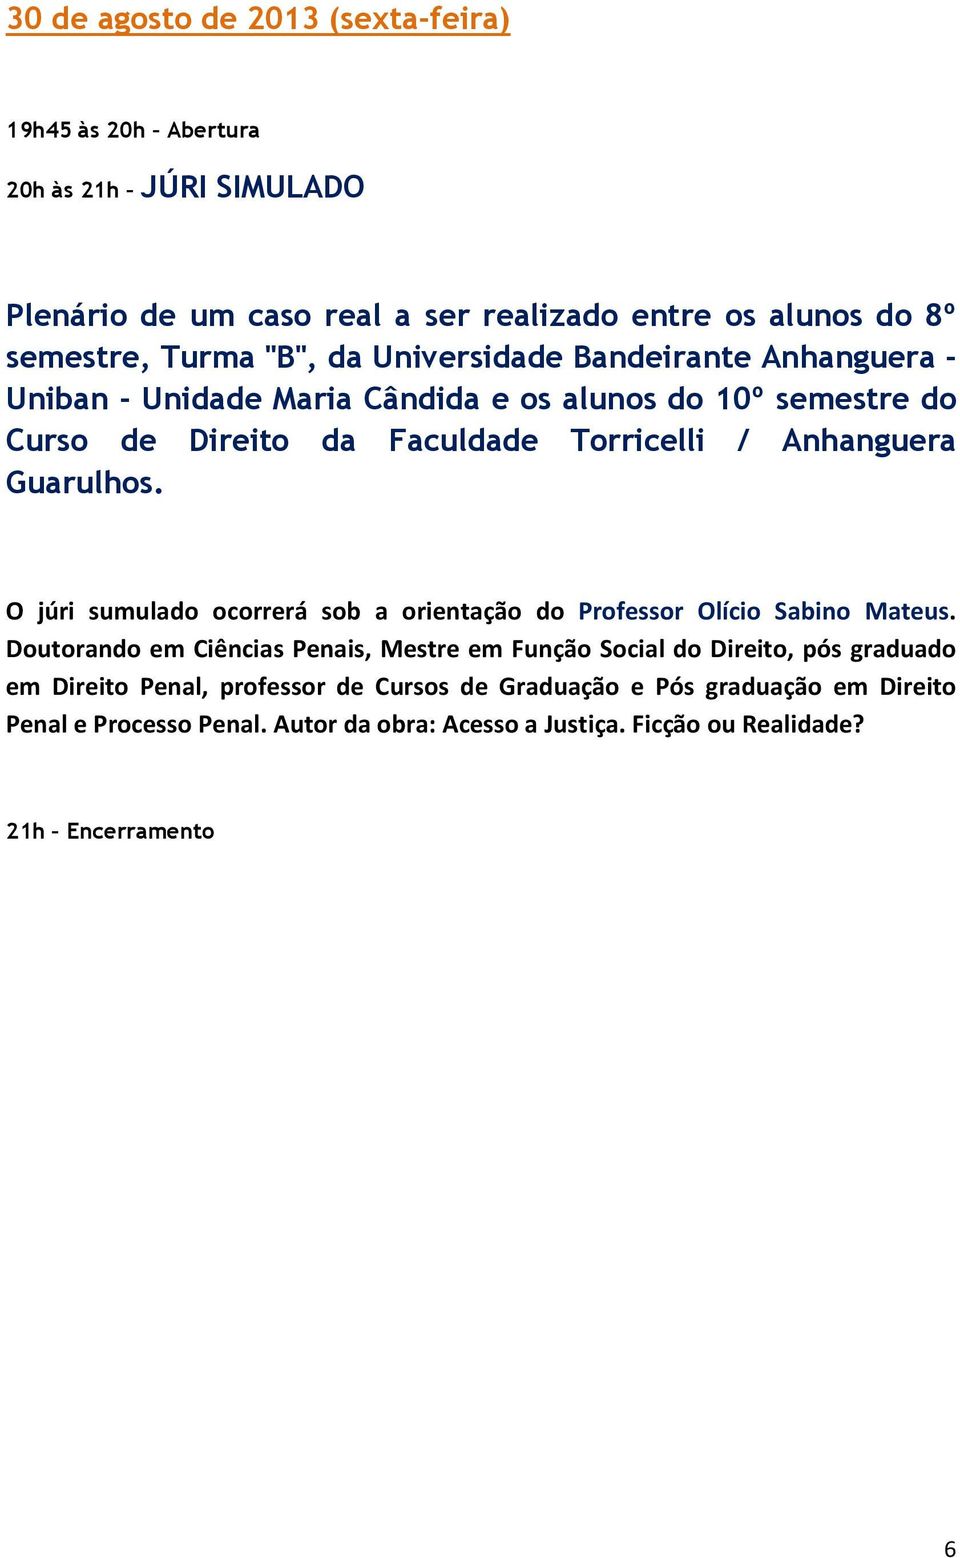 O júri sumulado ocorrerá sob a orientação do Professor Olício Sabino Mateus.